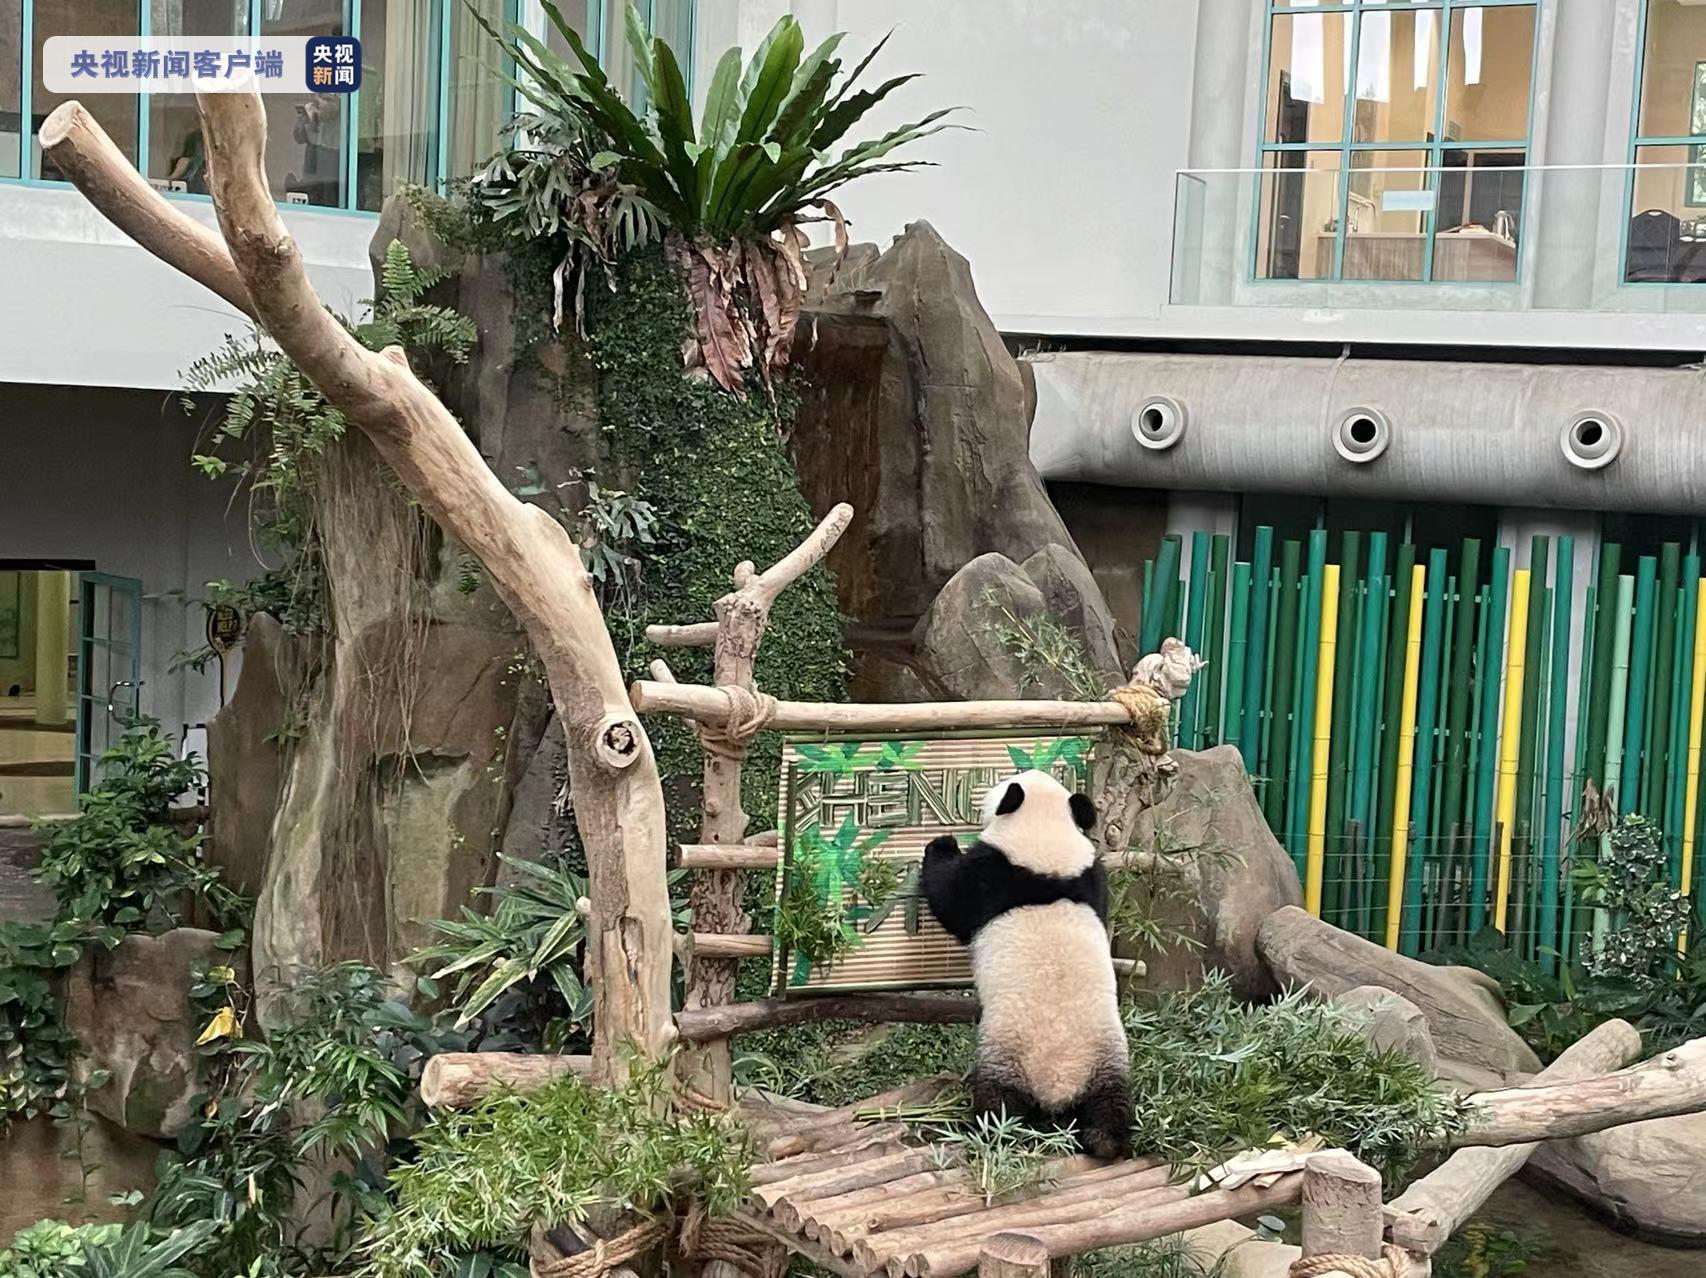 旅居马来西亚大熊猫宝宝取名“升谊” 象征中马友谊蒸蒸日上 – Sina